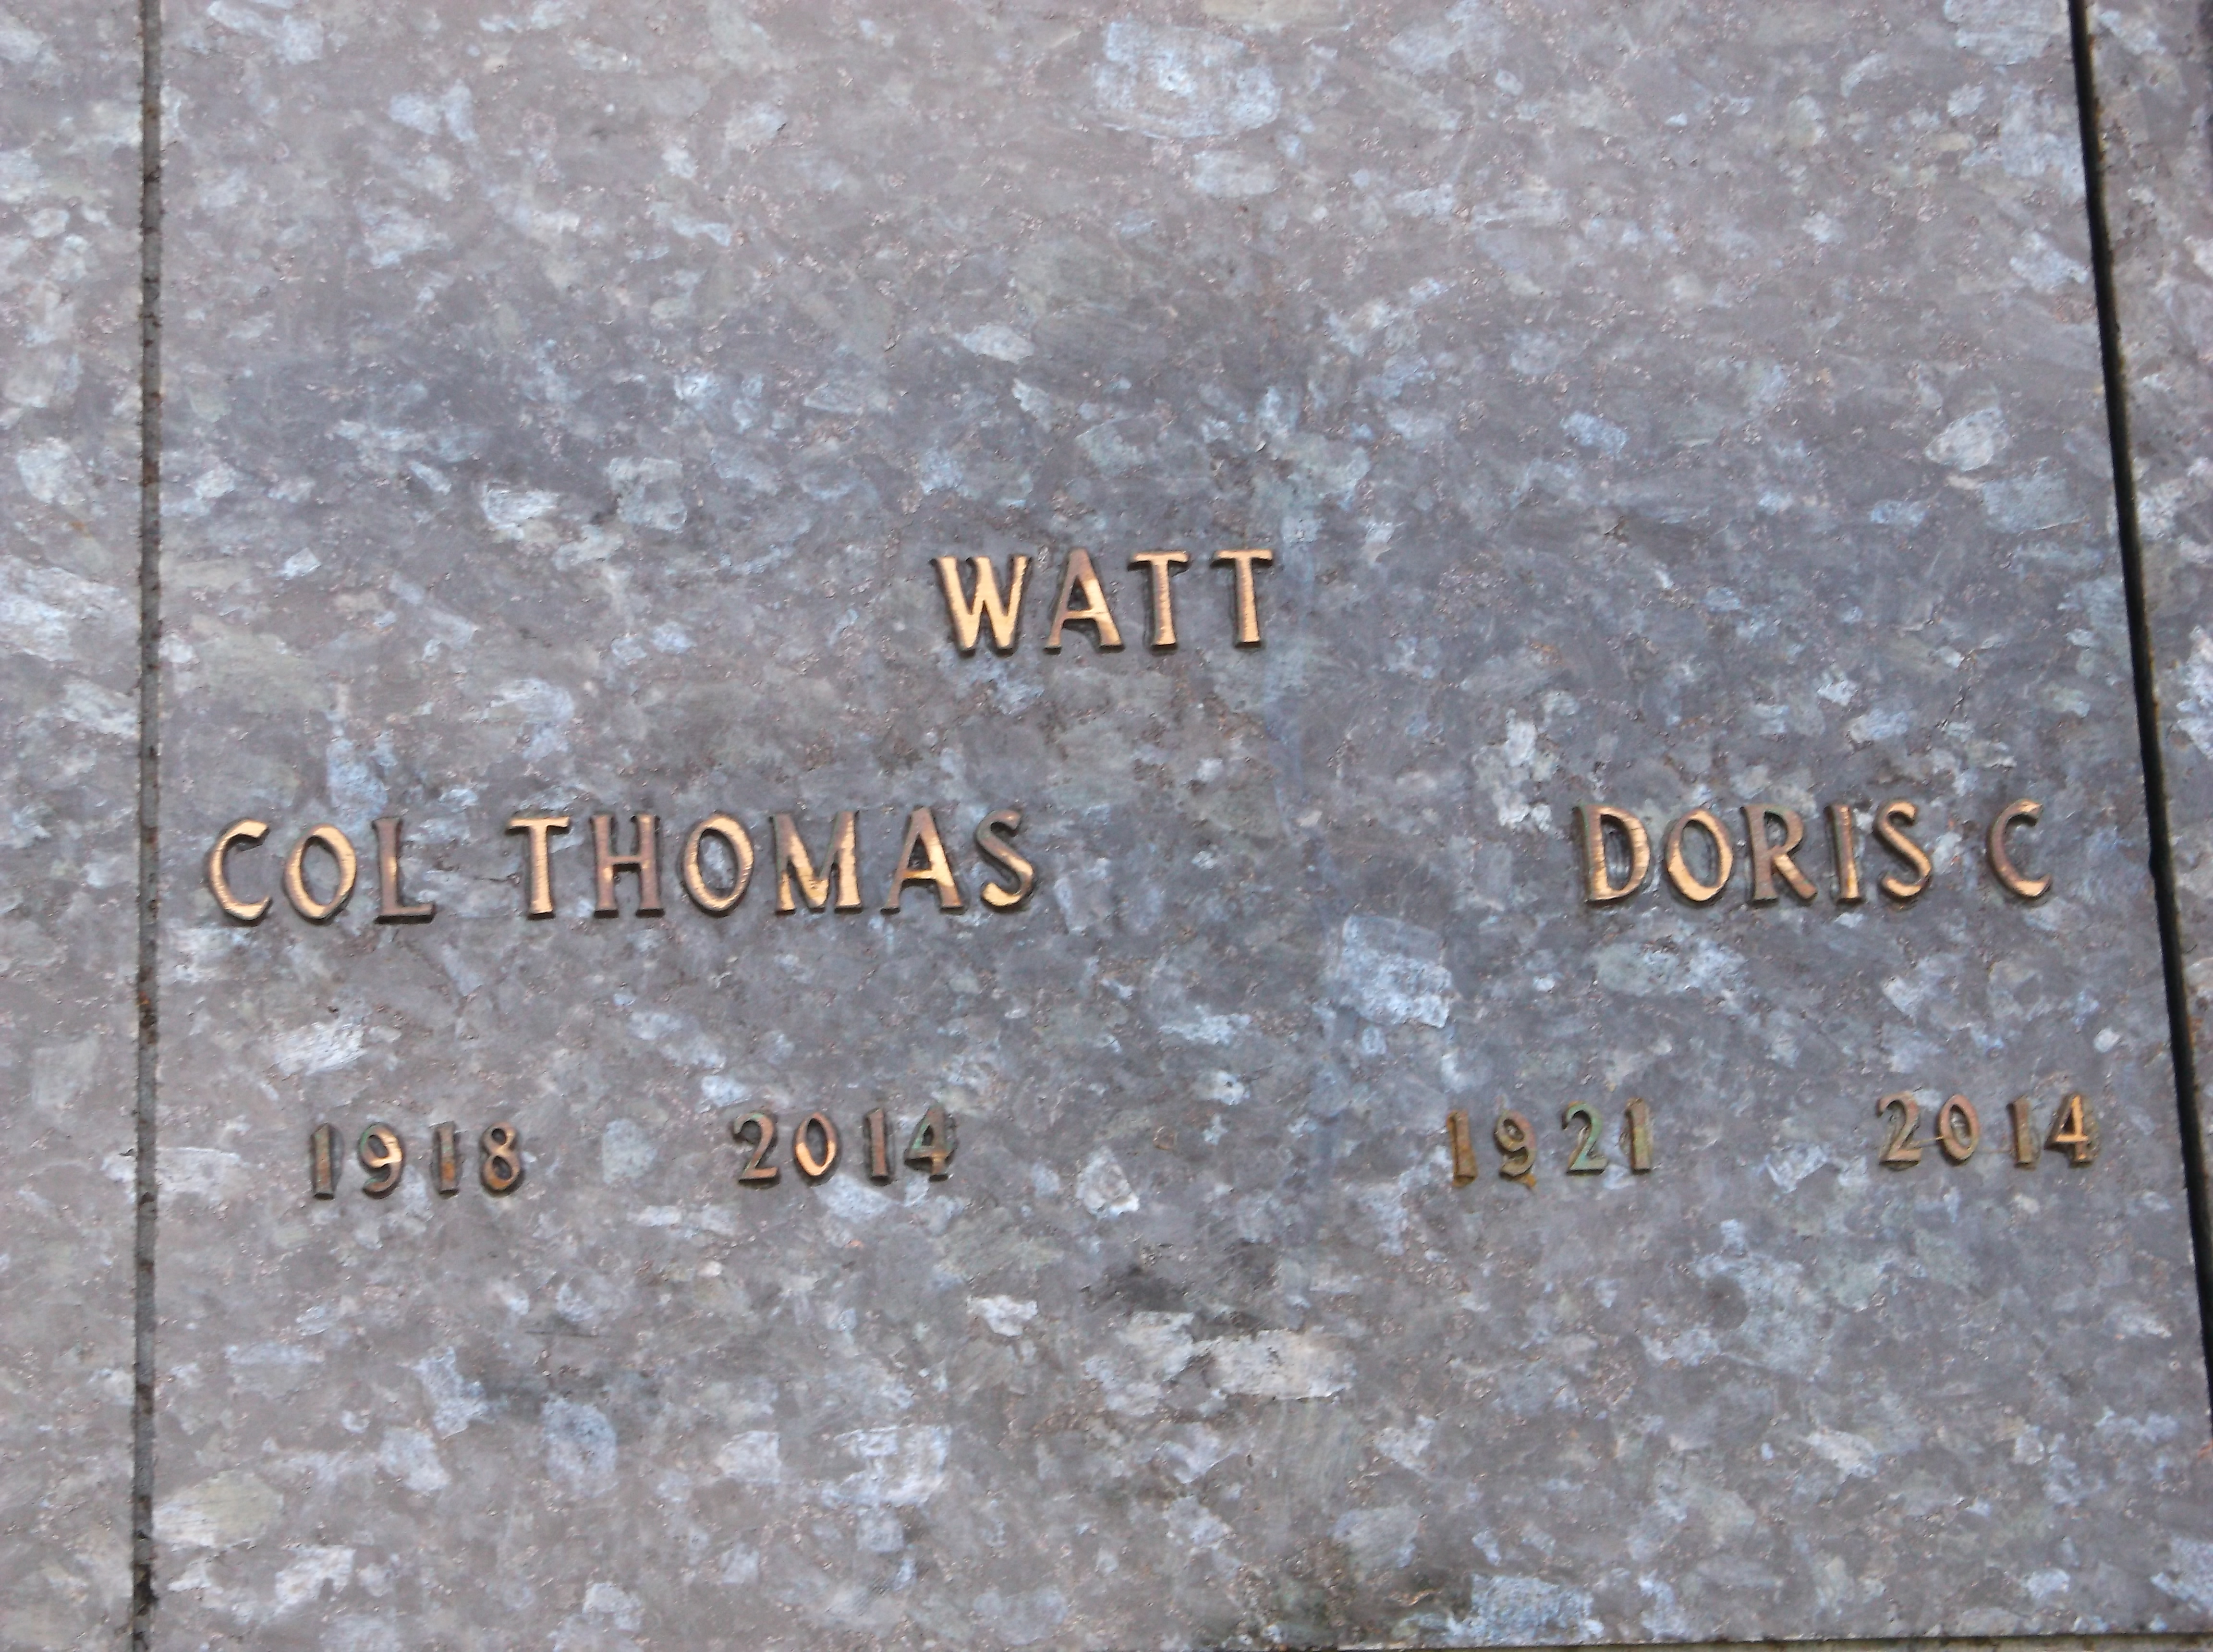 Doris C Watt